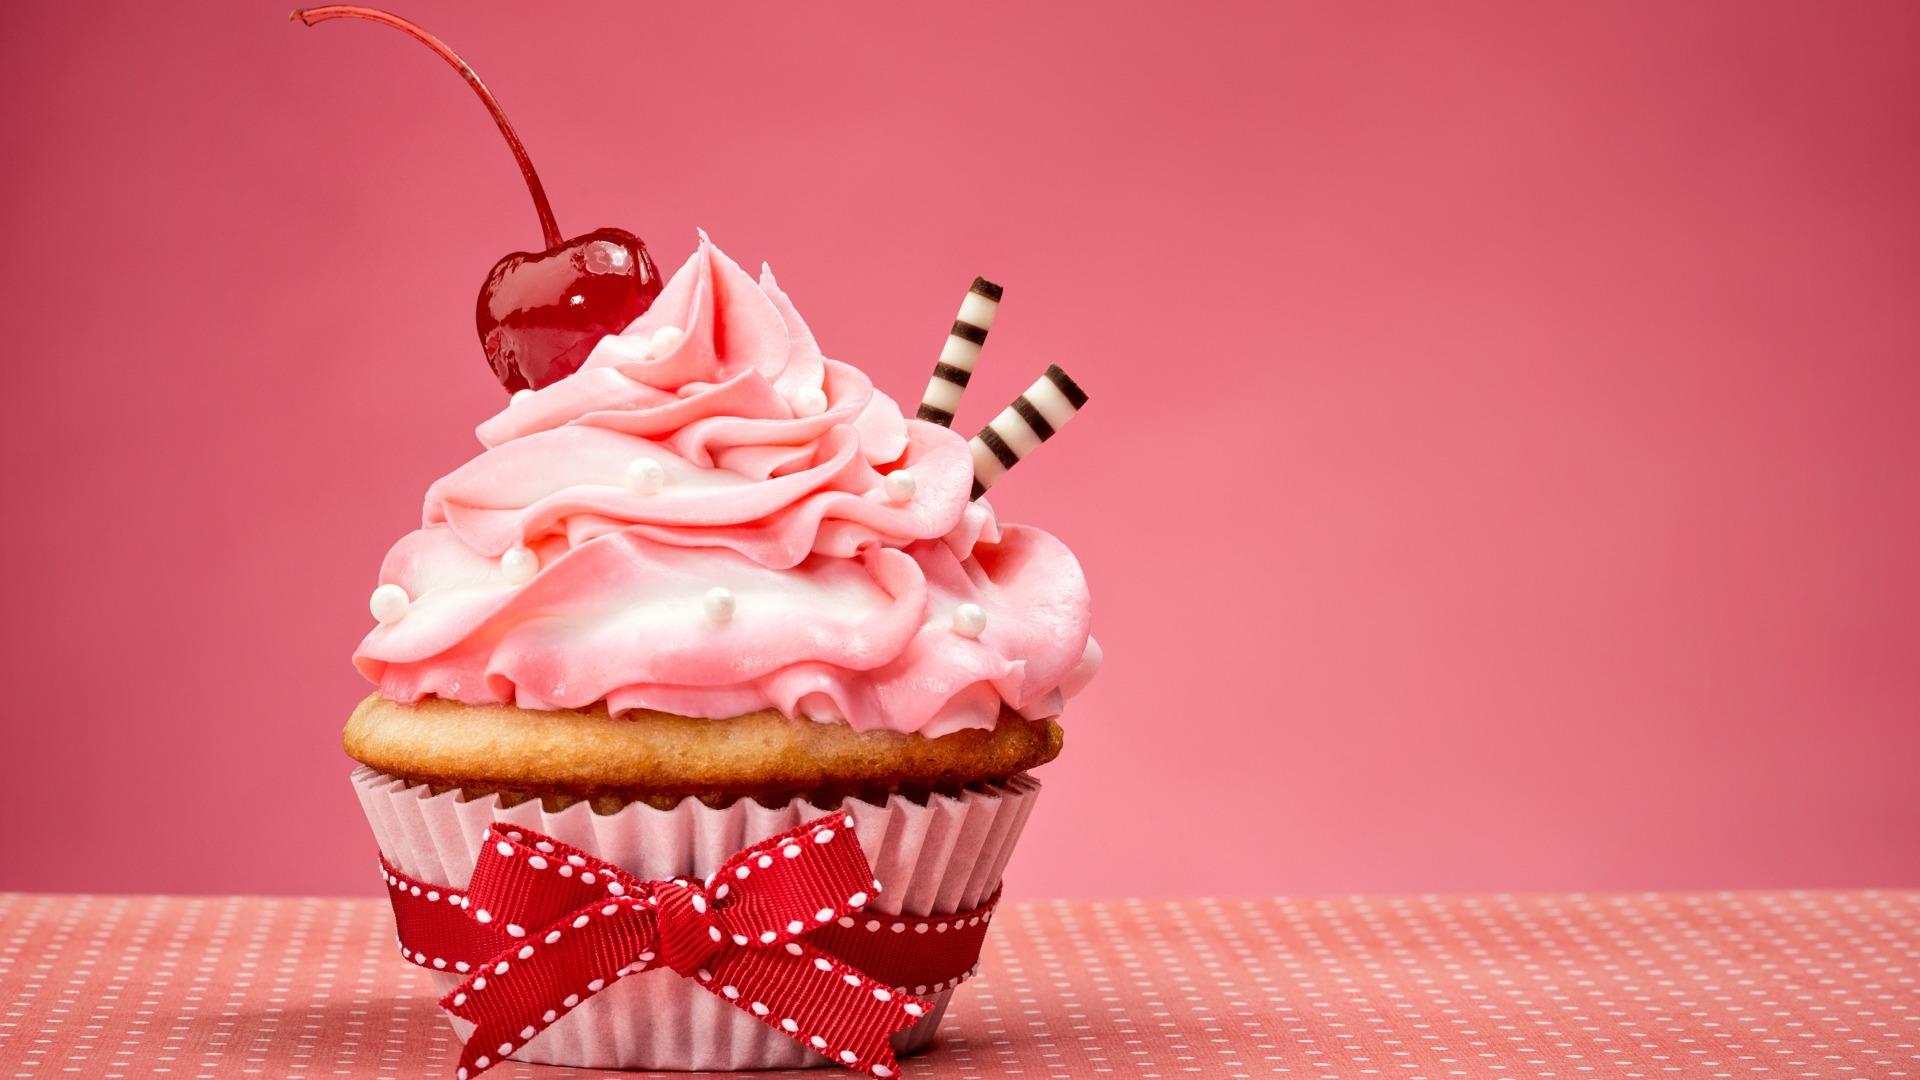 Wallpapers cake cupcake pink on the desktop